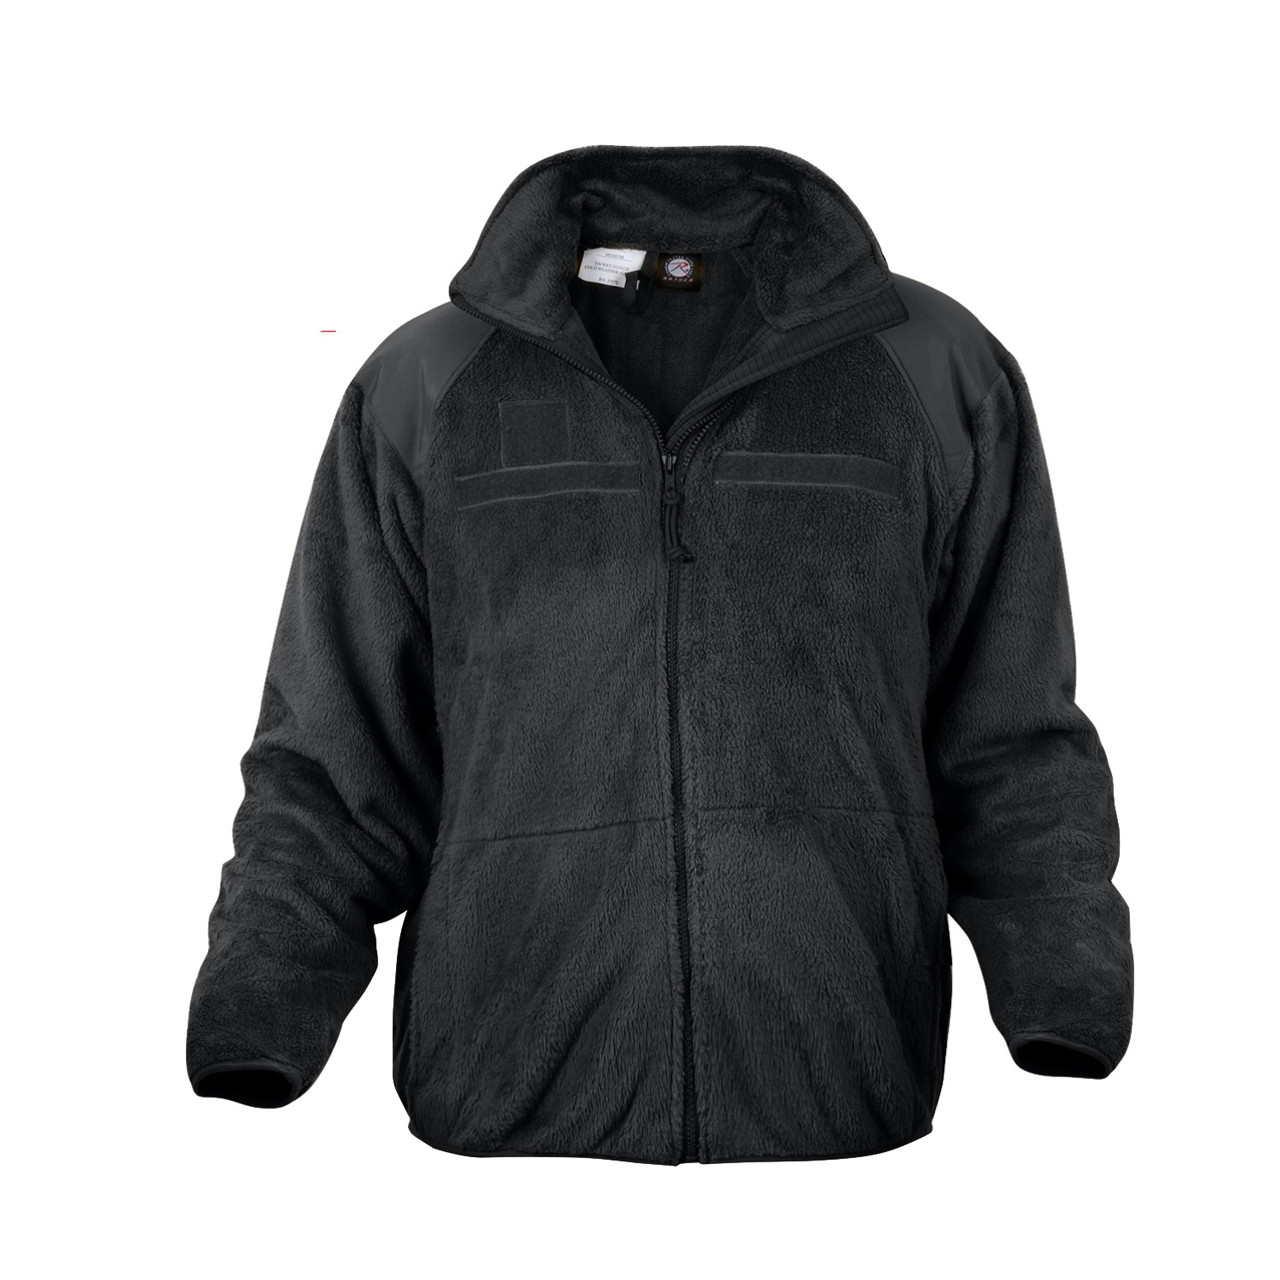 Rothco - Generation III Level 3 ECWCS Black Fleece Jacket